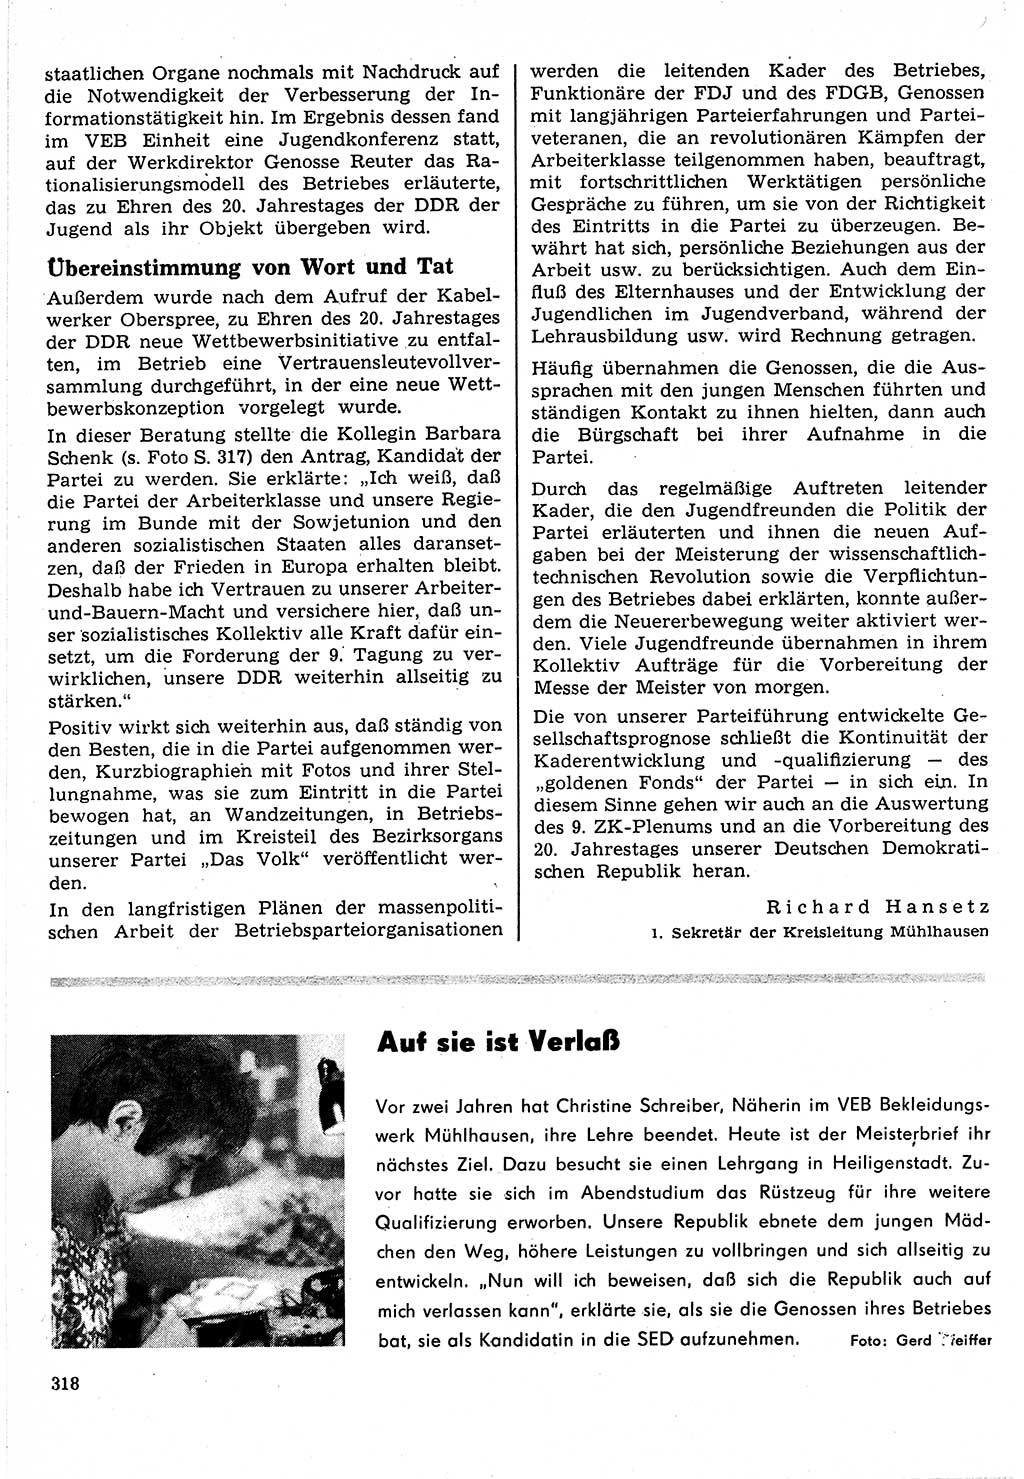 Neuer Weg (NW), Organ des Zentralkomitees (ZK) der SED (Sozialistische Einheitspartei Deutschlands) für Fragen des Parteilebens, 24. Jahrgang [Deutsche Demokratische Republik (DDR)] 1969, Seite 318 (NW ZK SED DDR 1969, S. 318)